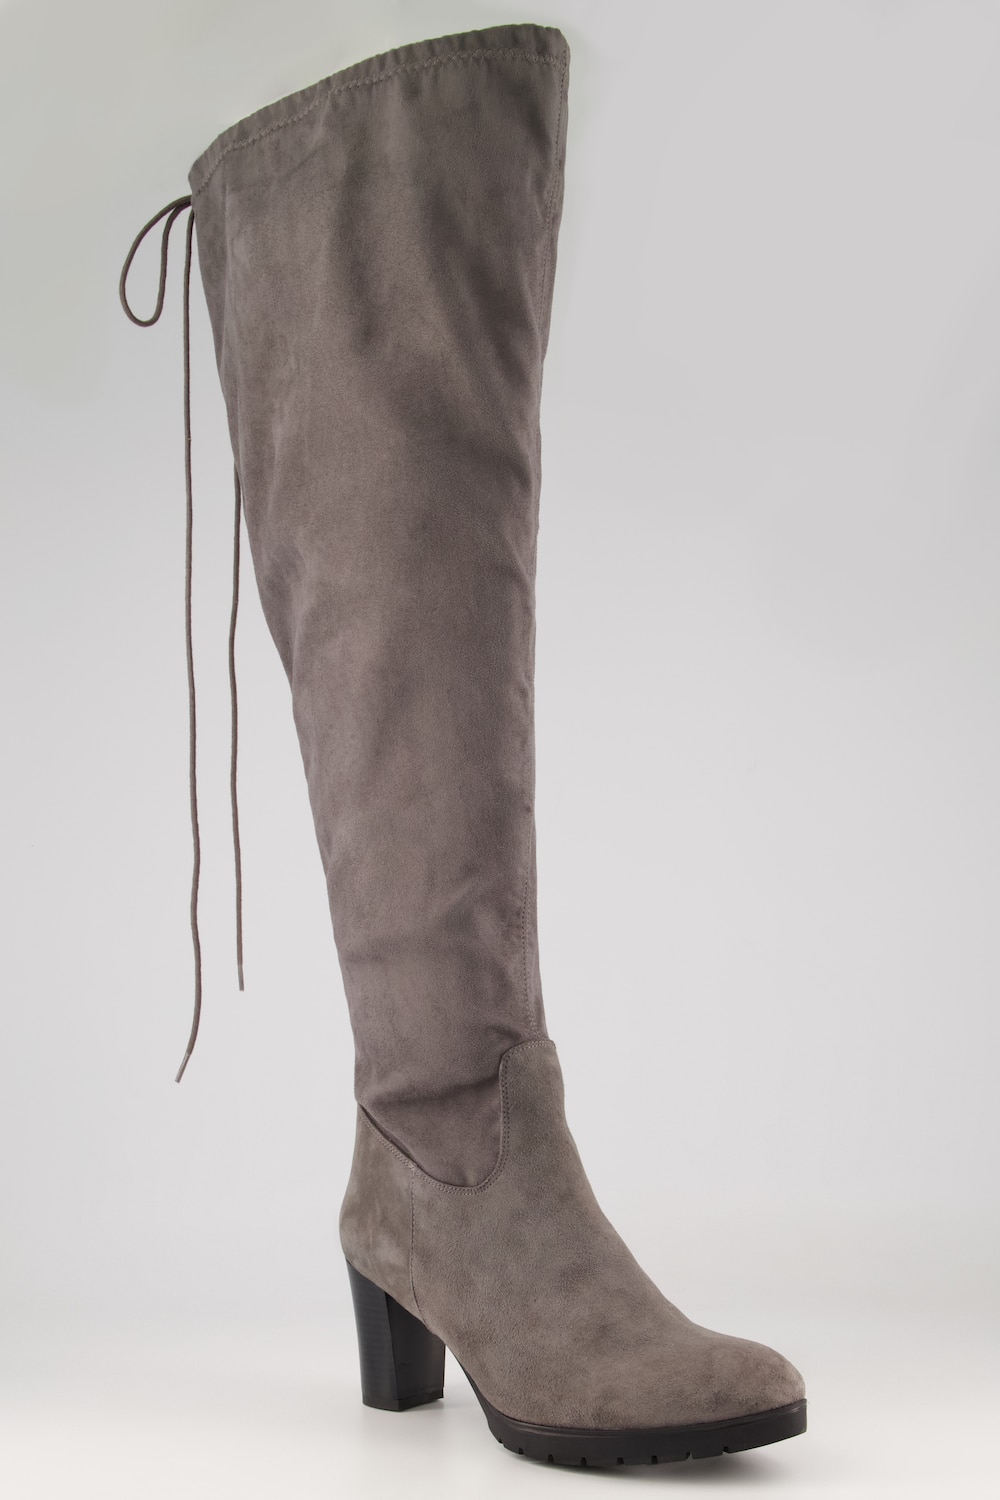 Overknee-Stiefel, Damen, grau, Größe: 38, Leder/Synthetische Fasern, Ulla Popken von Ulla Popken